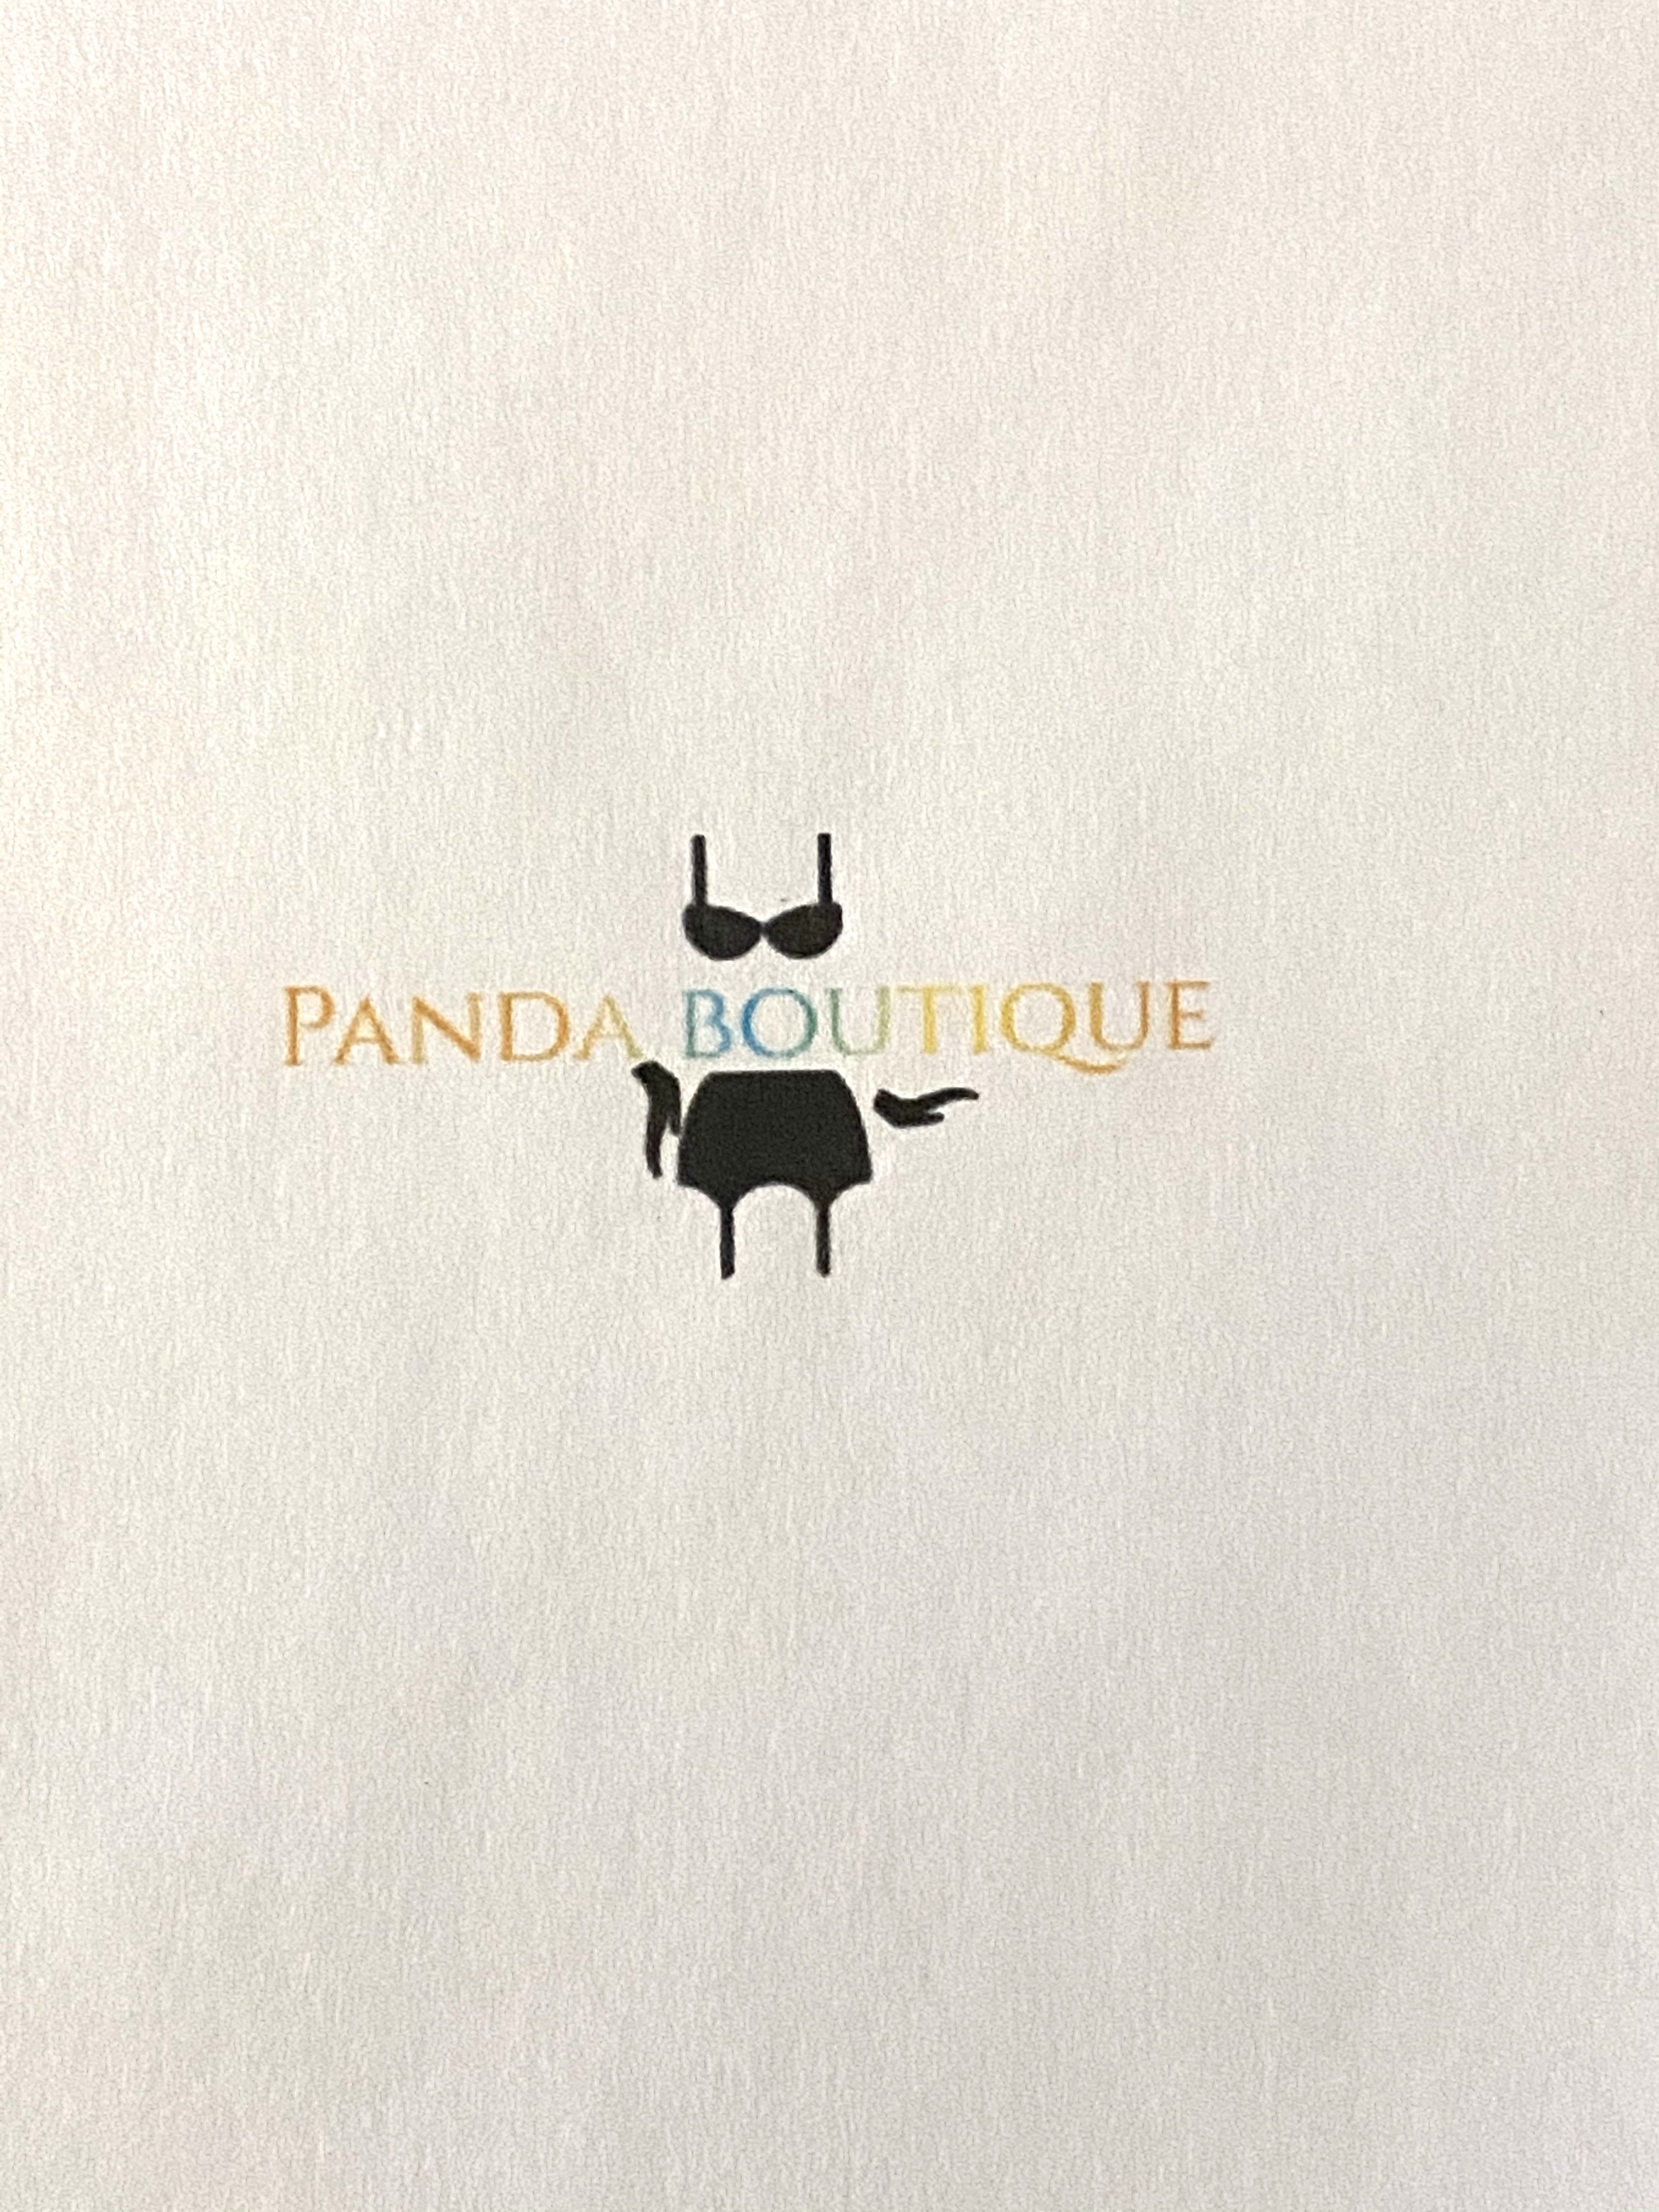 Panda Boutique